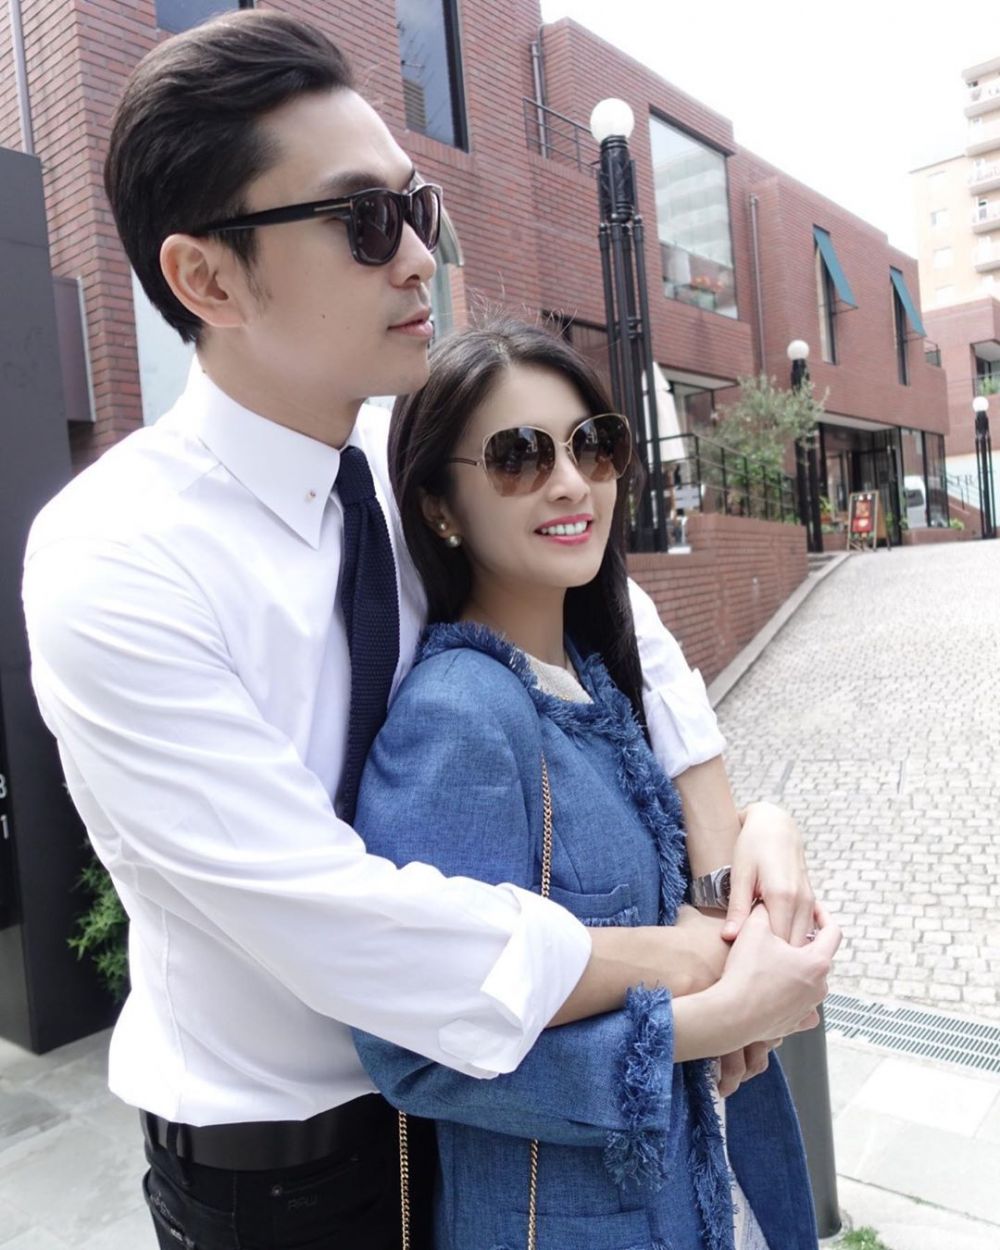 Gara-gara kosmetik, Sandra Dewi disebut hemat oleh suami